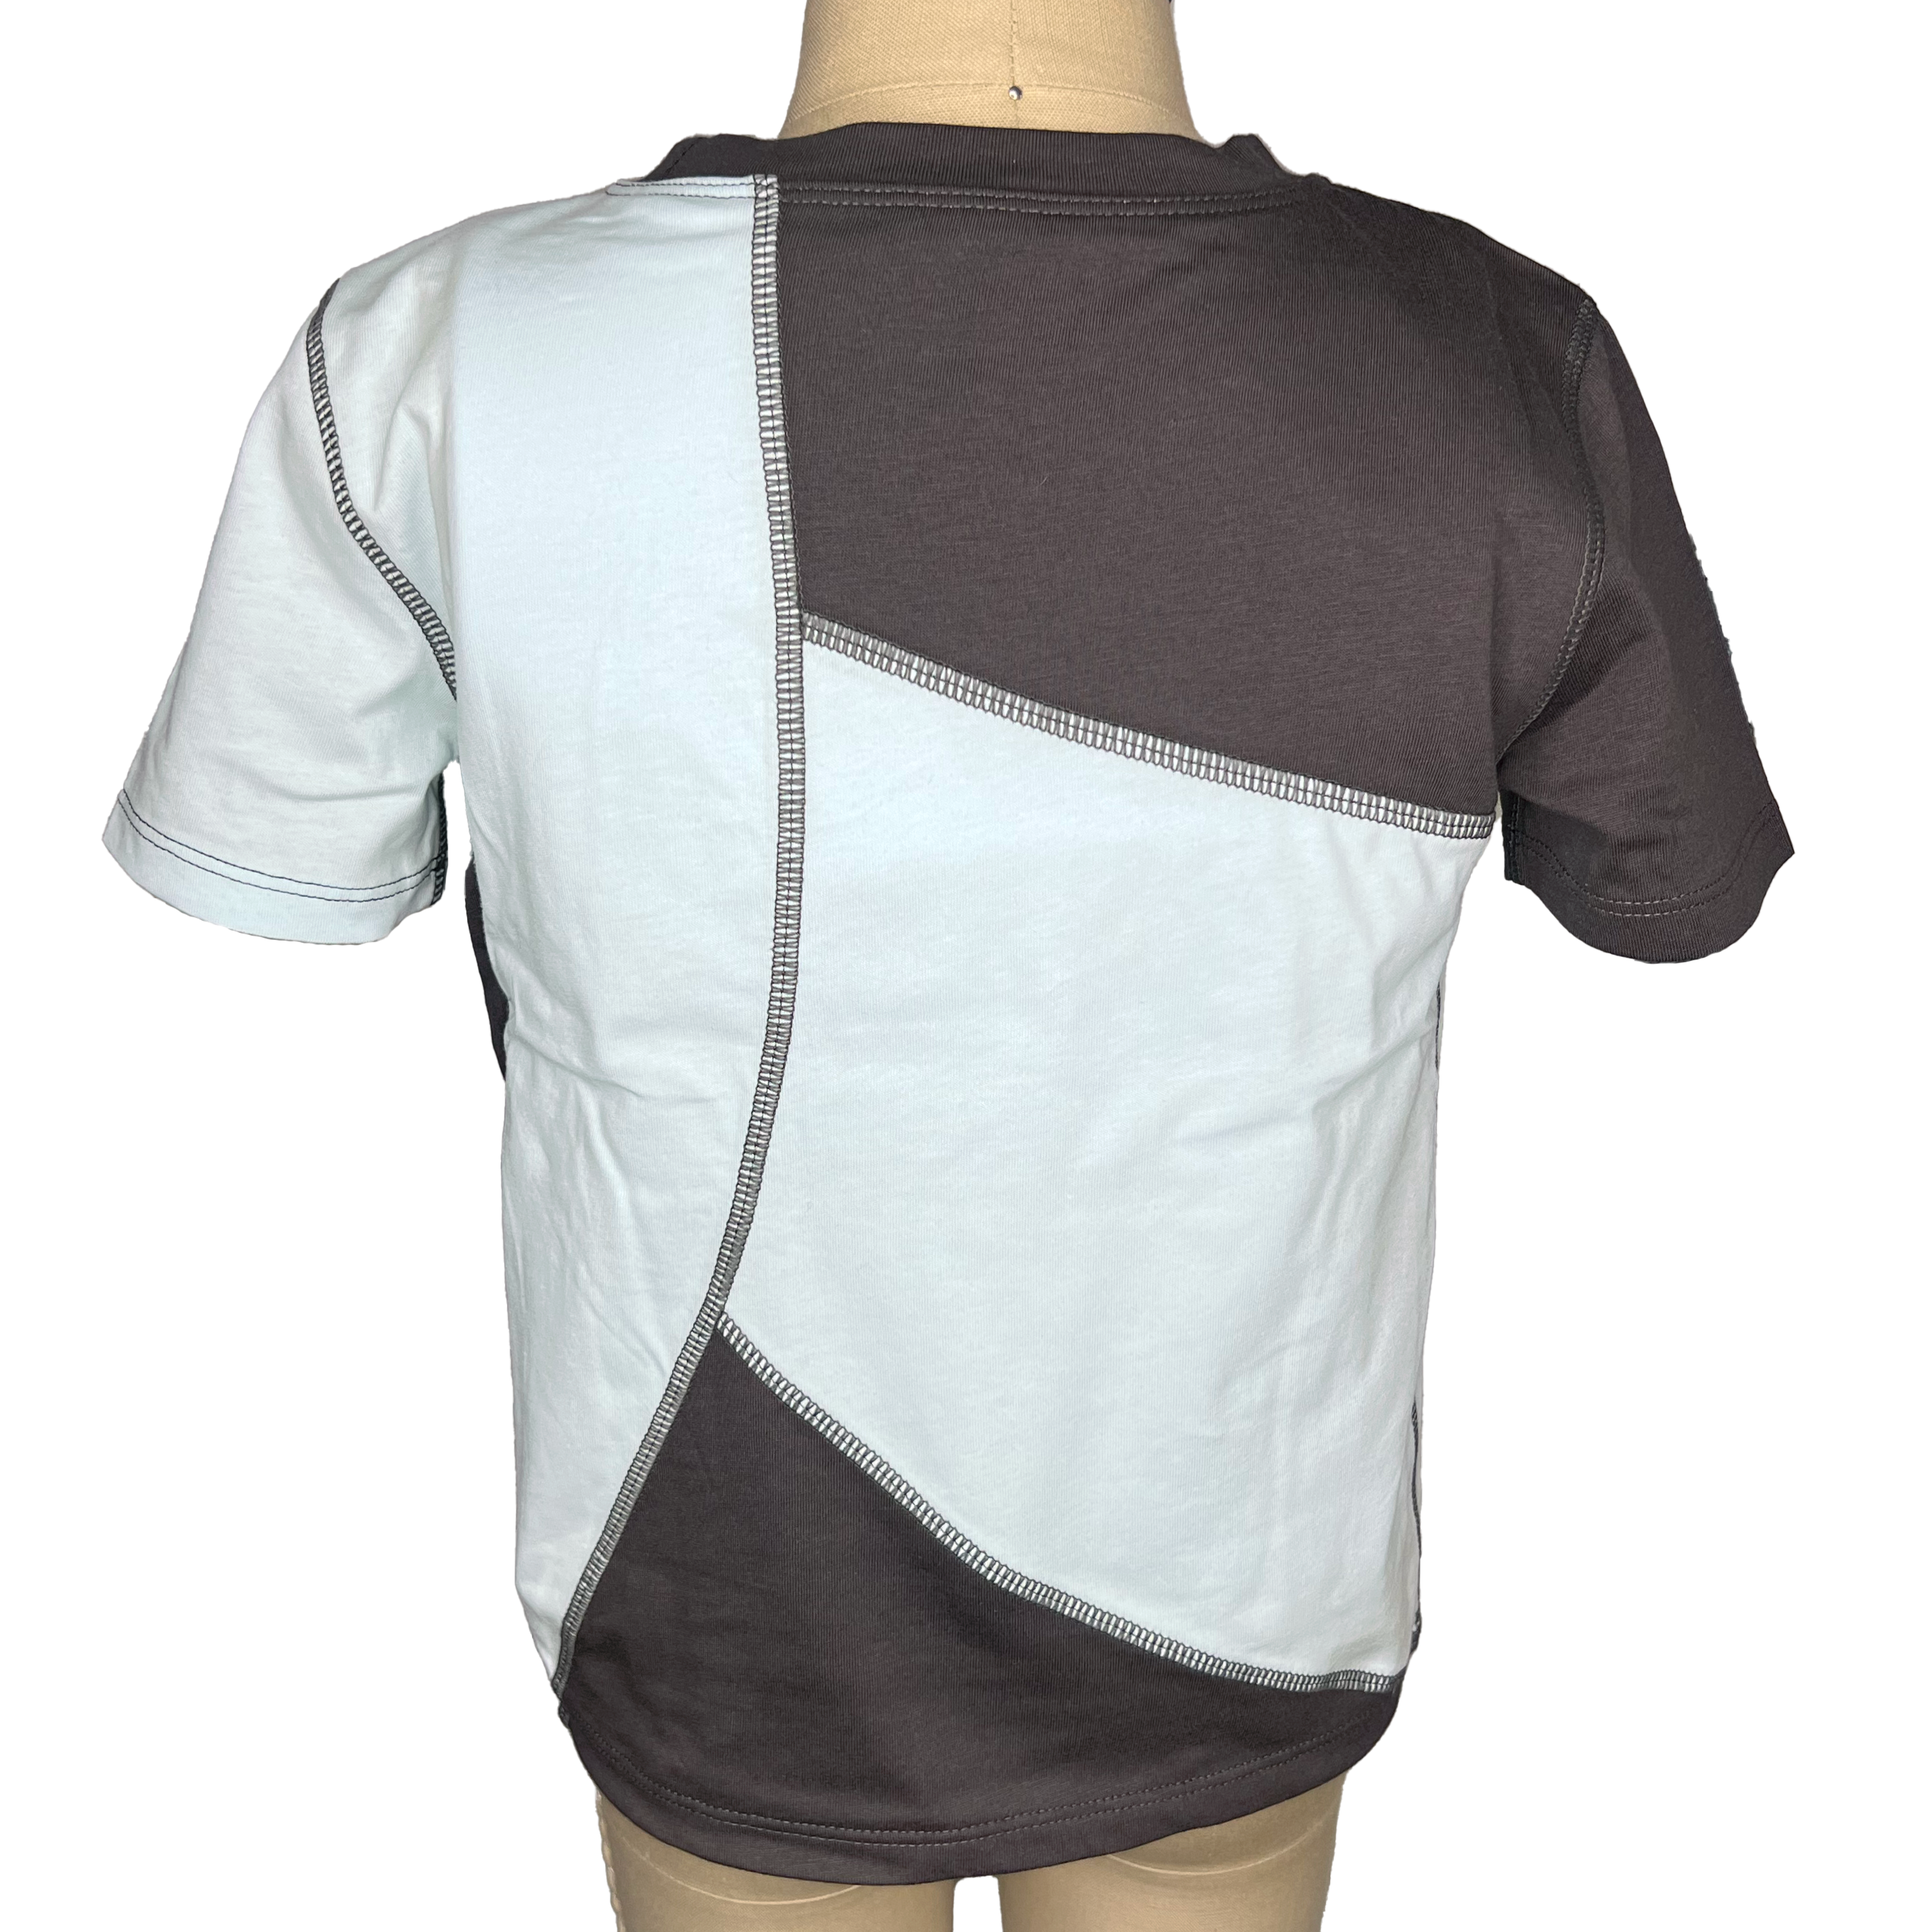 Back design on compression shirt for autism